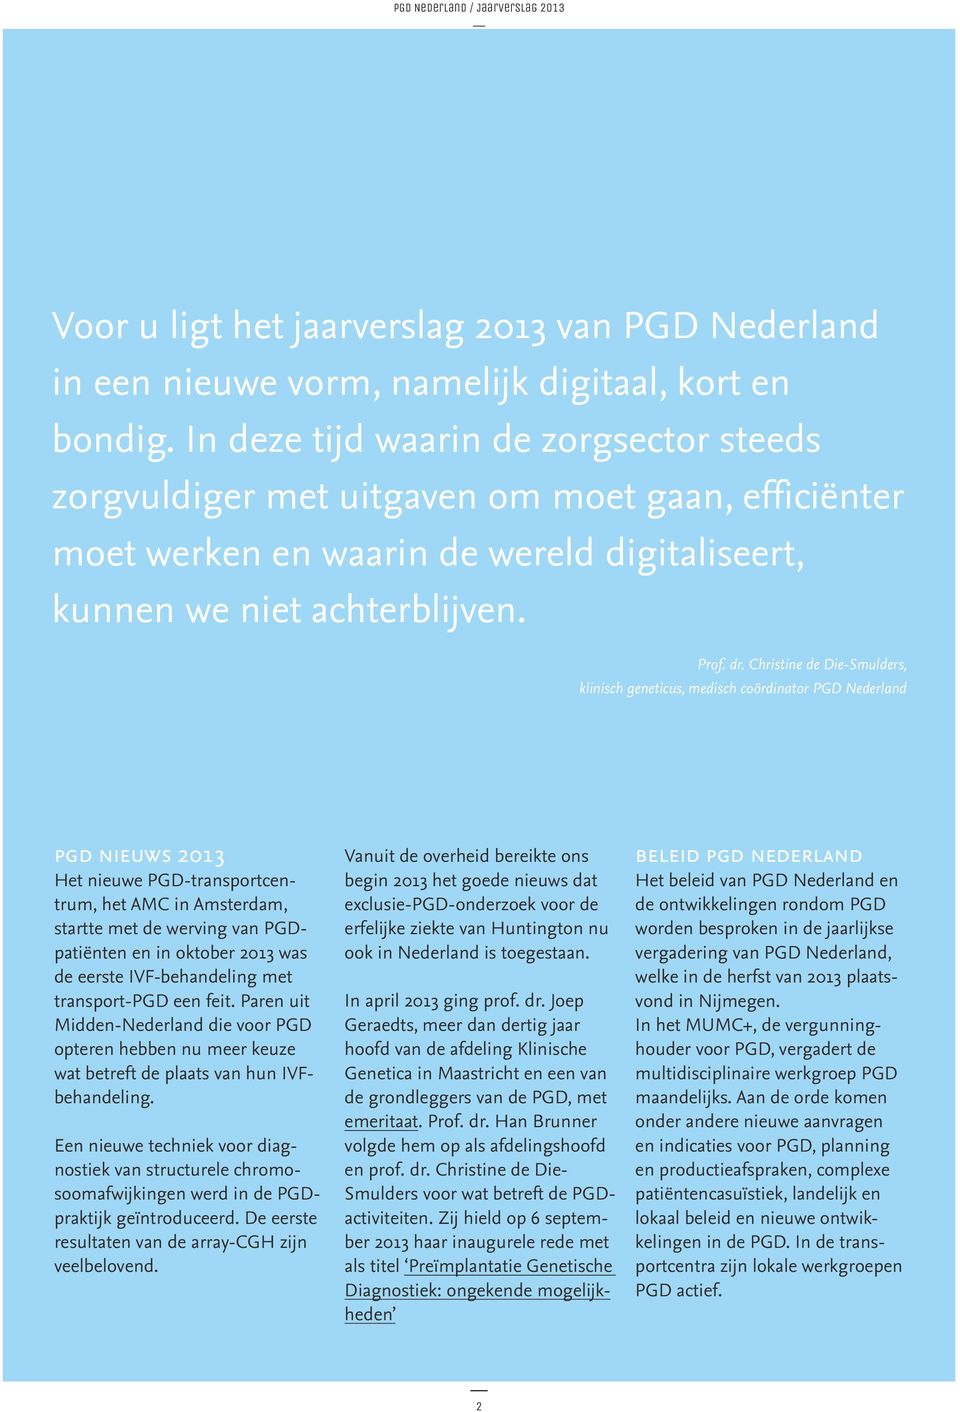 Christine de Die-Smulders, klinisch geneticus, medisch coördinator PGD Nederland pgd nieuws Het nieuwe PGD-transportcentrum, het AMC in Amsterdam, startte met de werving van PGDpatiënten en in